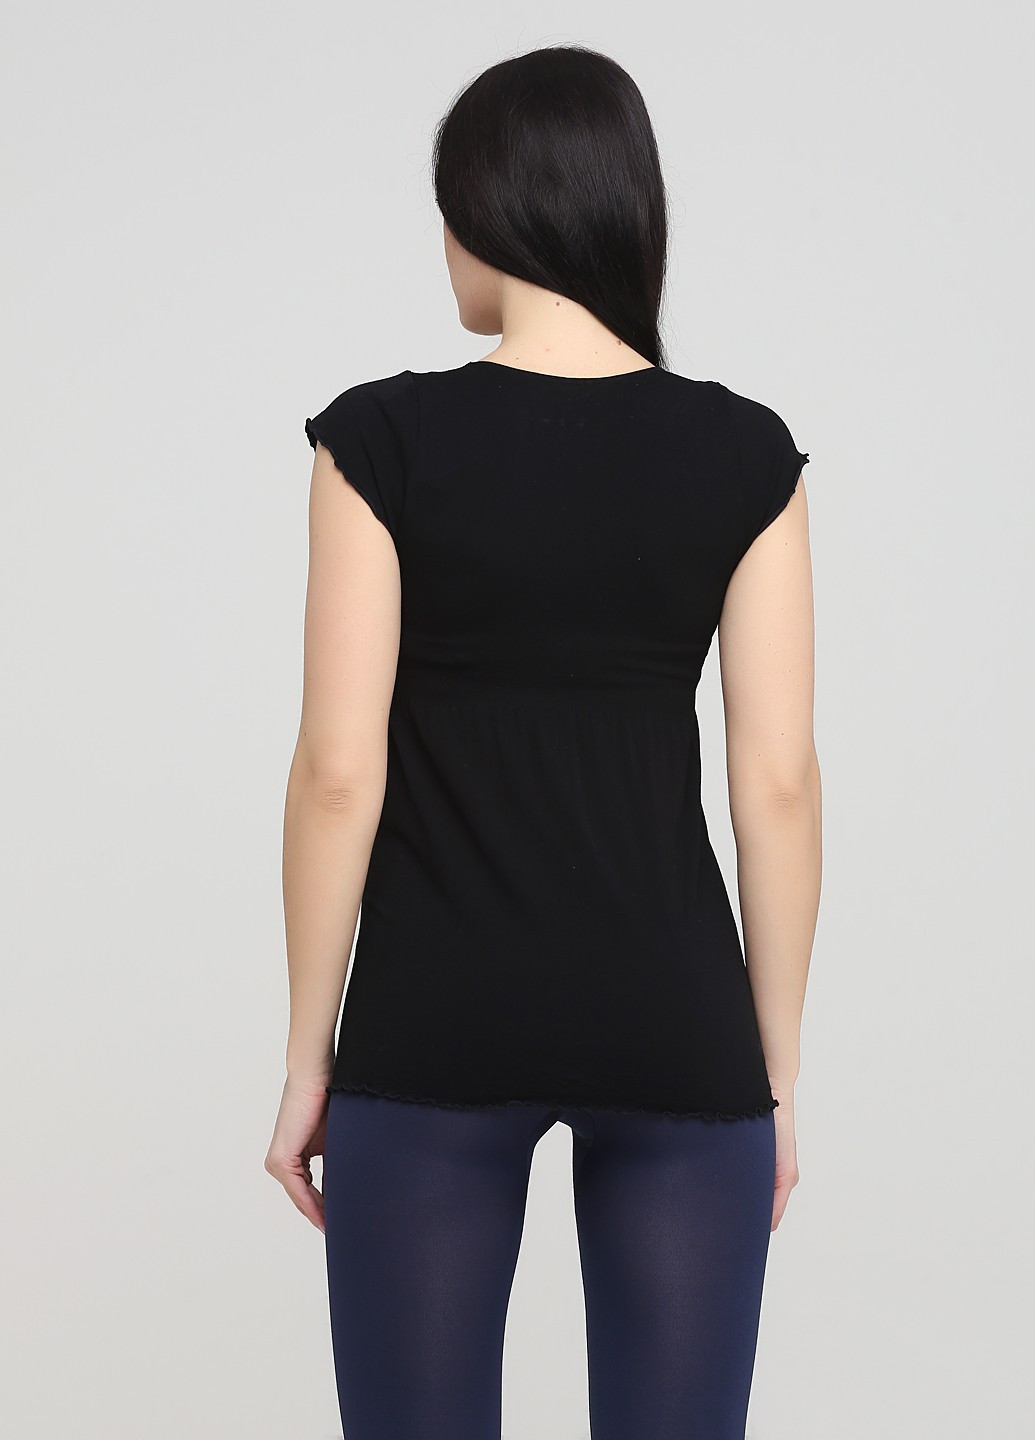 Черная демисезонная блуза Esmara